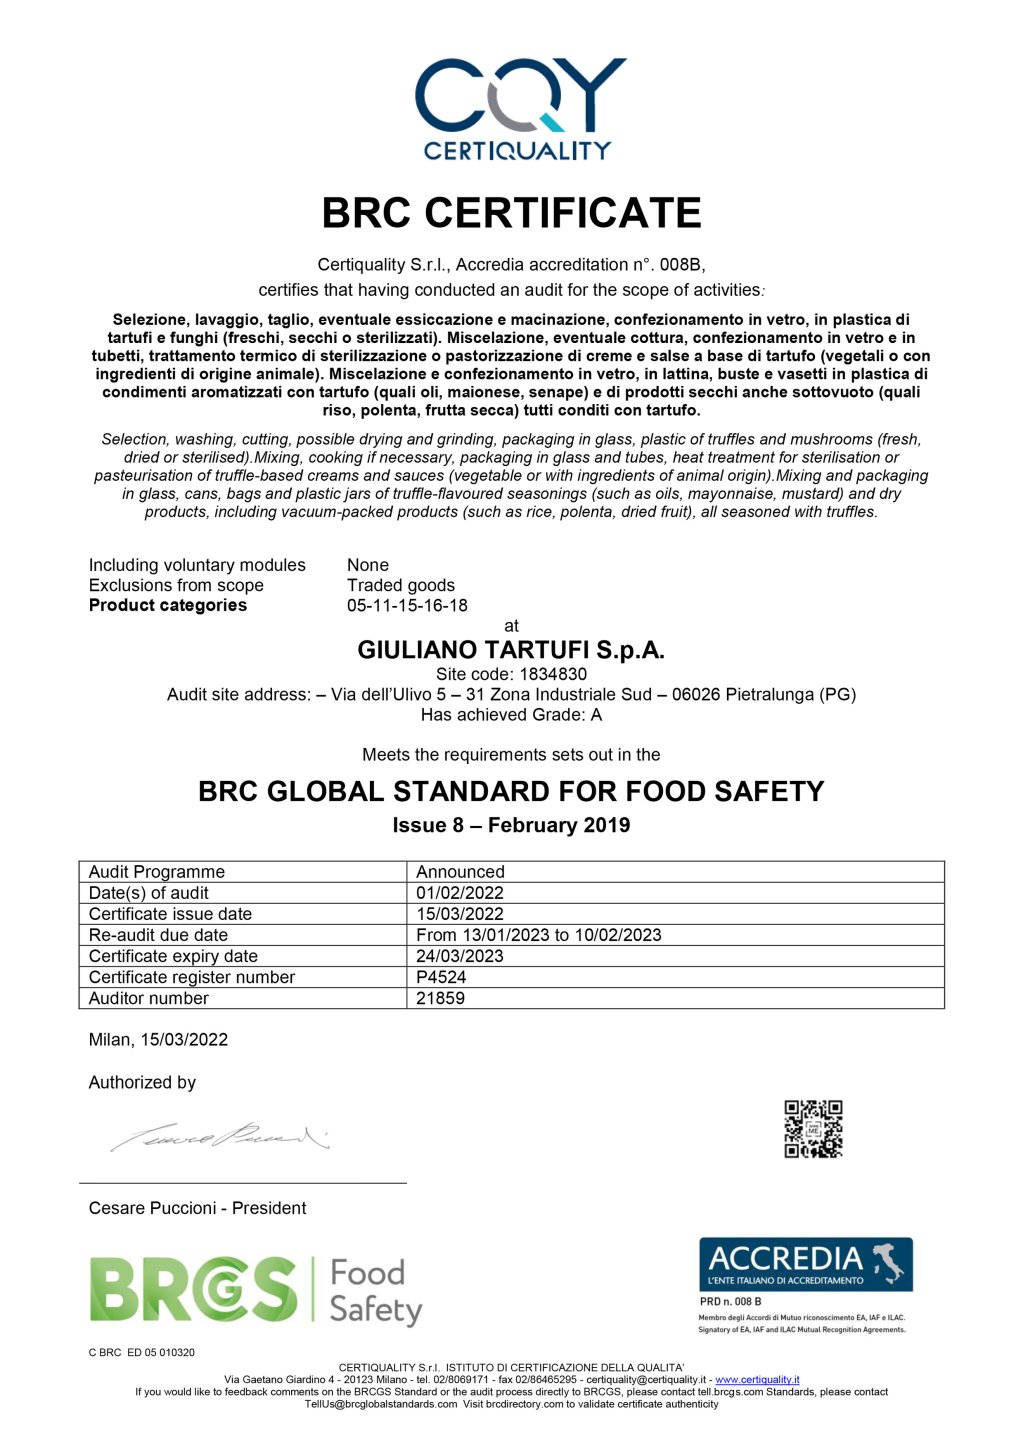 P4524 Certificato_BRC_2022